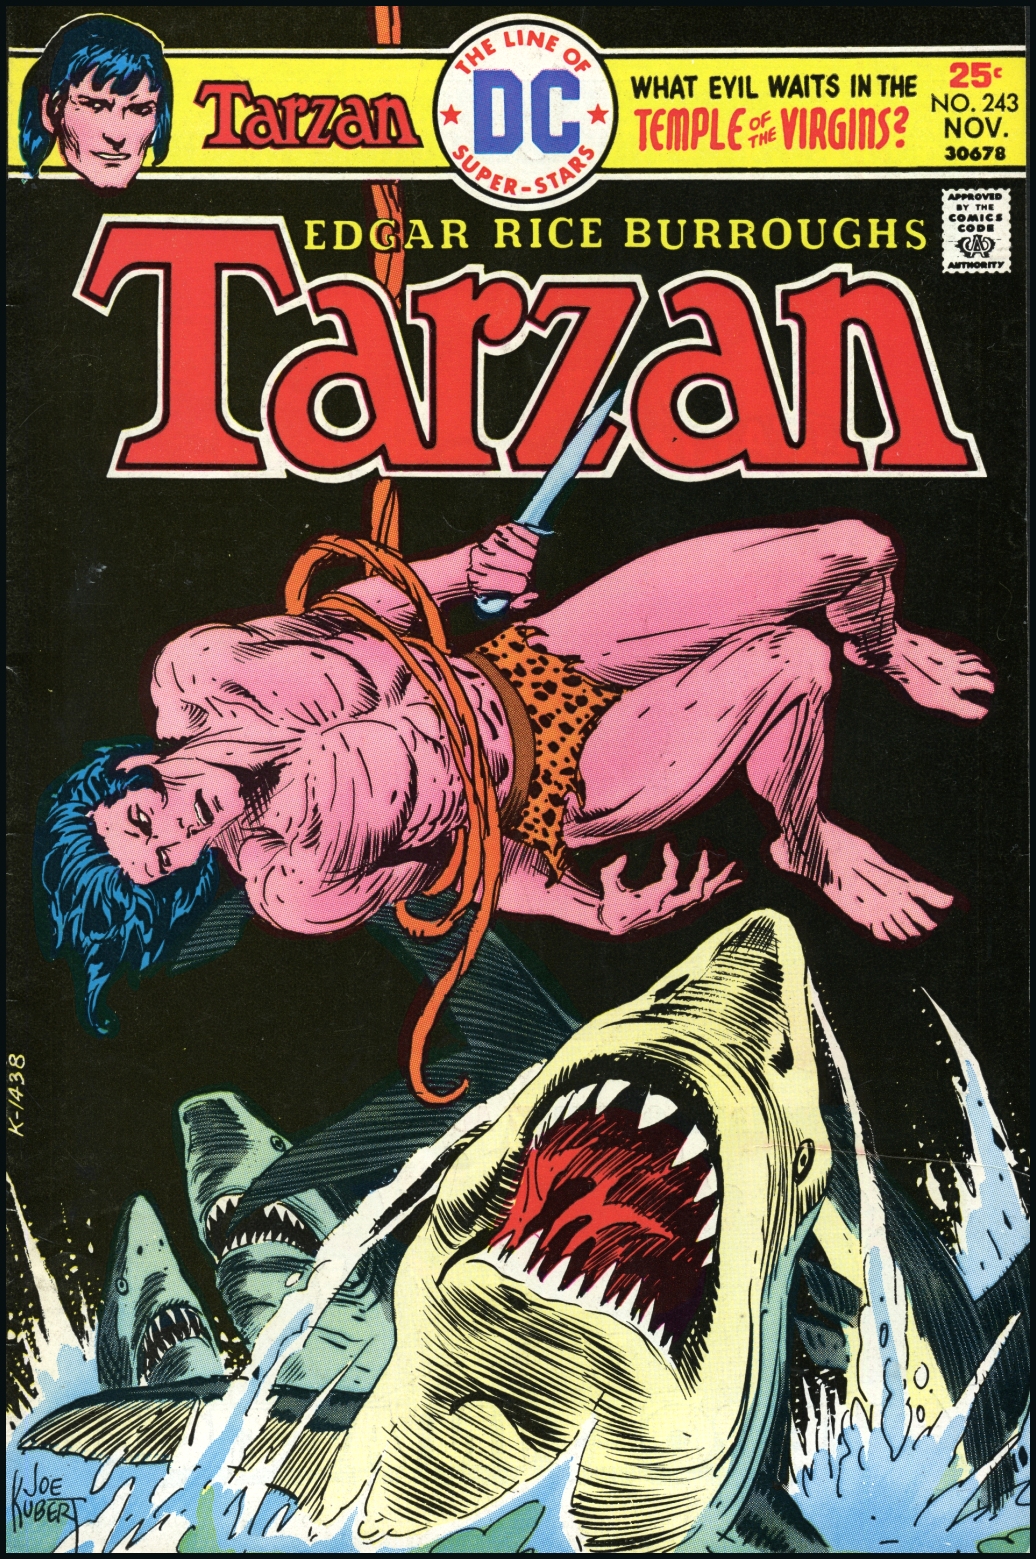 ERBzine 5706a: CONTENTS TARZAN DC COMICS II